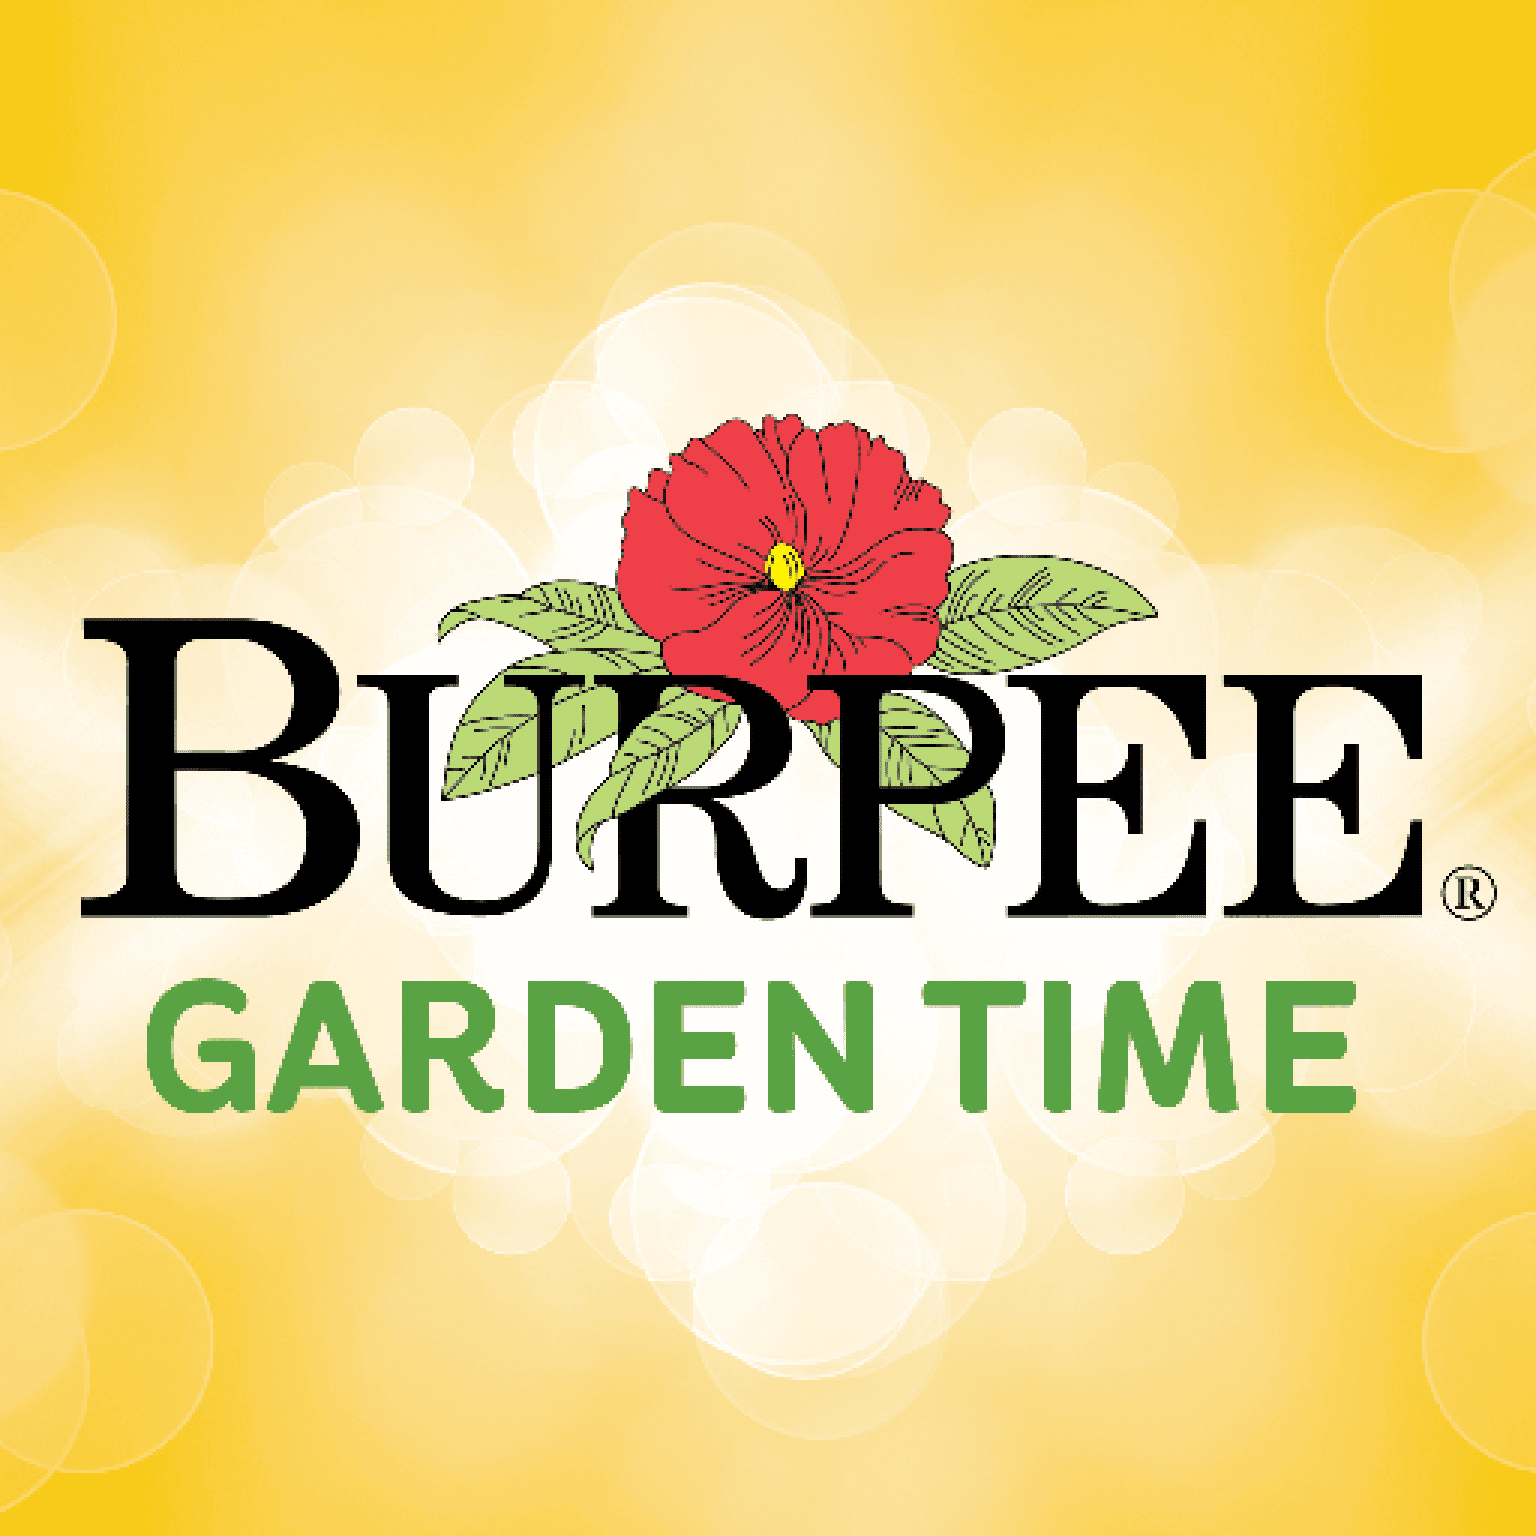 burpee vegetable garden planner app